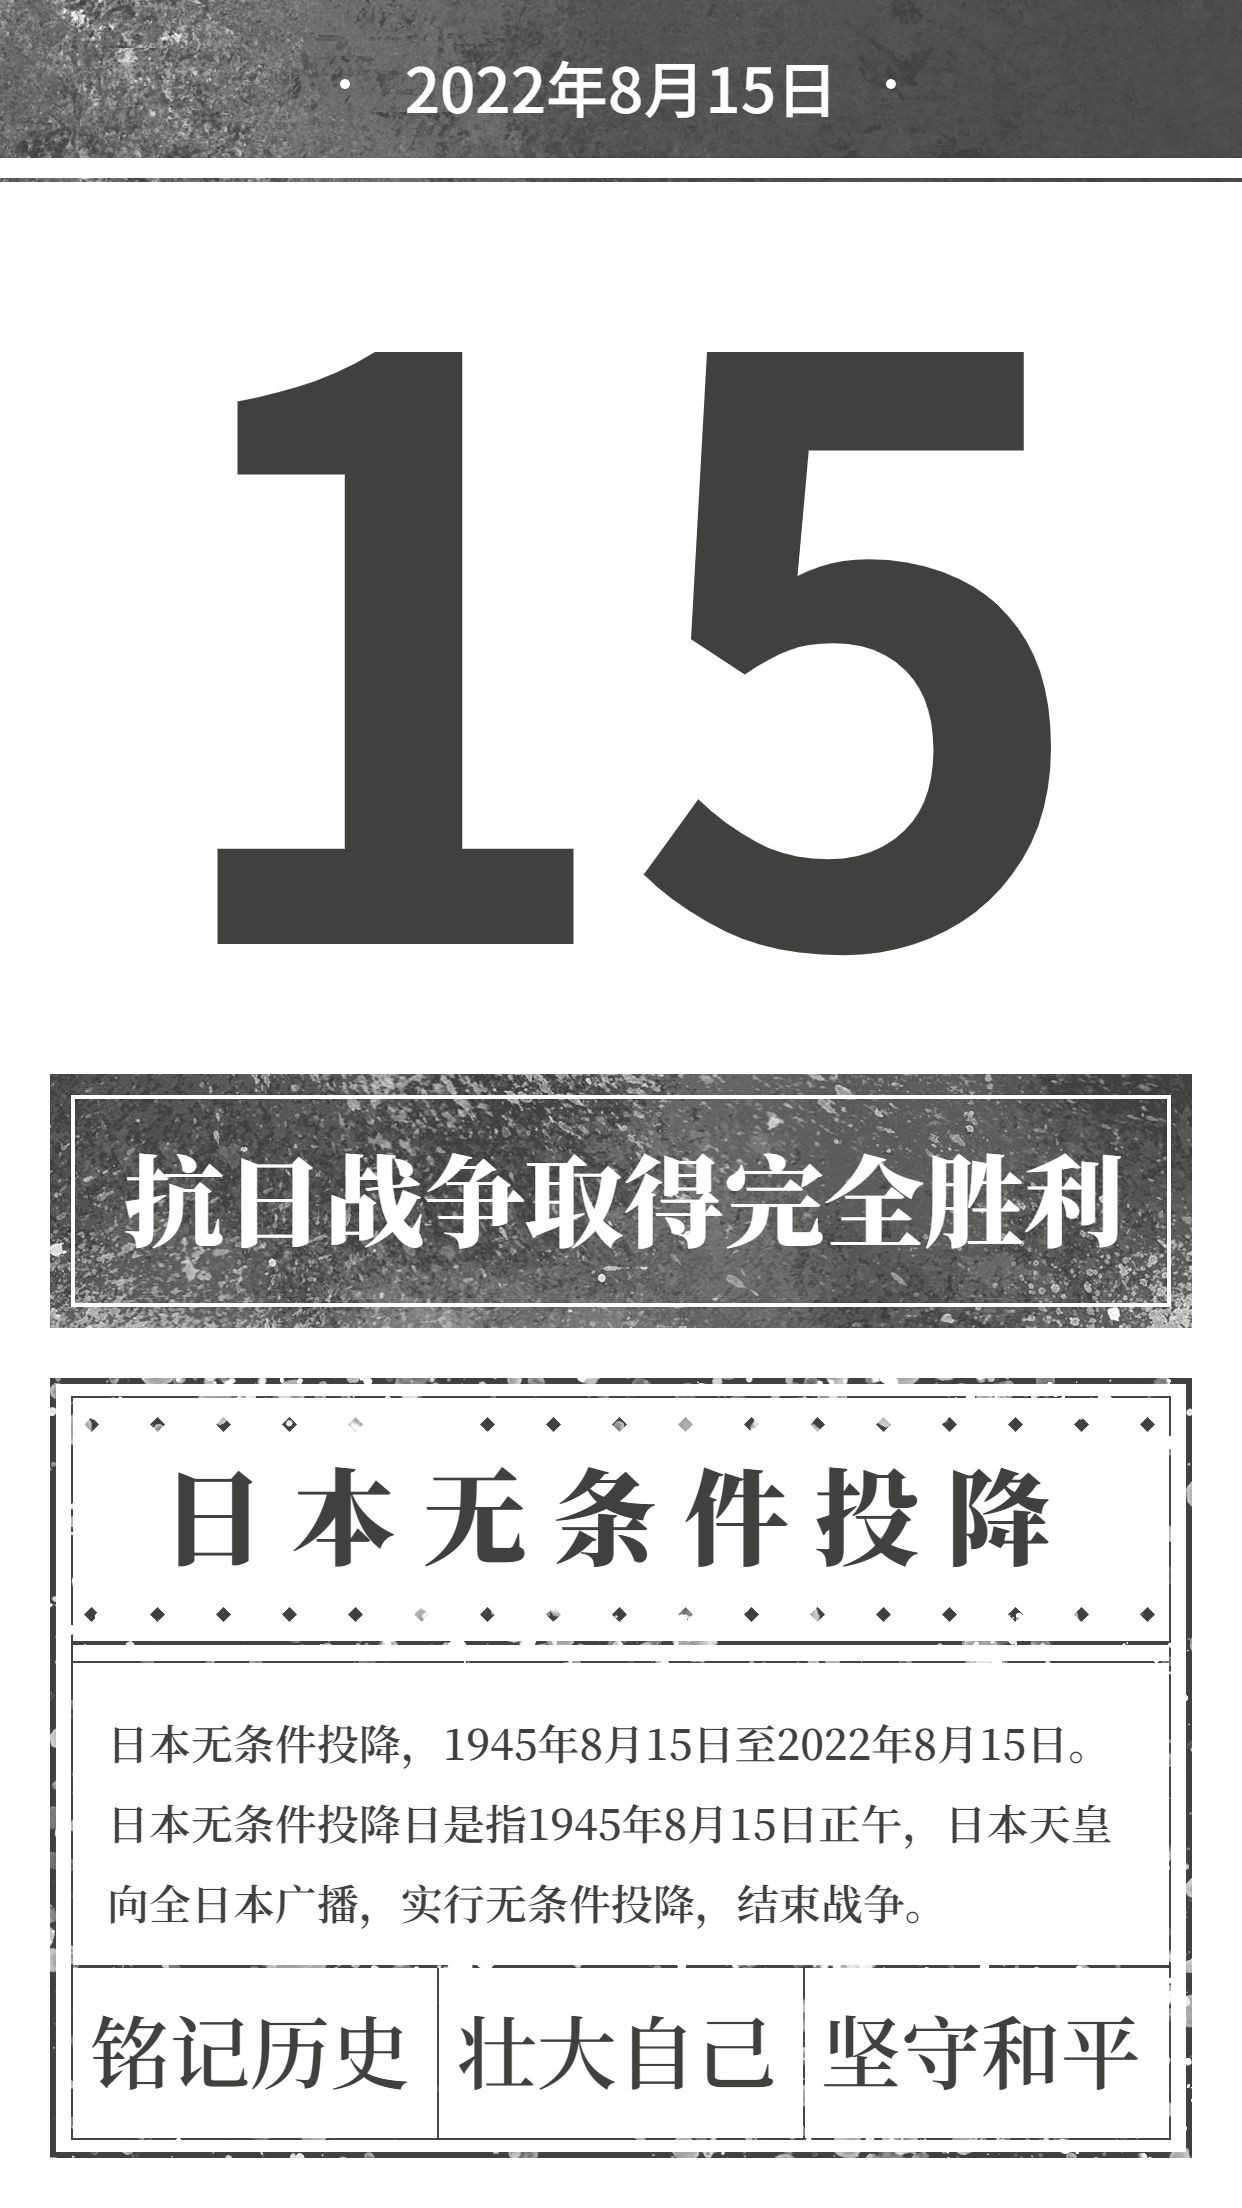 日本无条件投降日节日科普排版手机海报